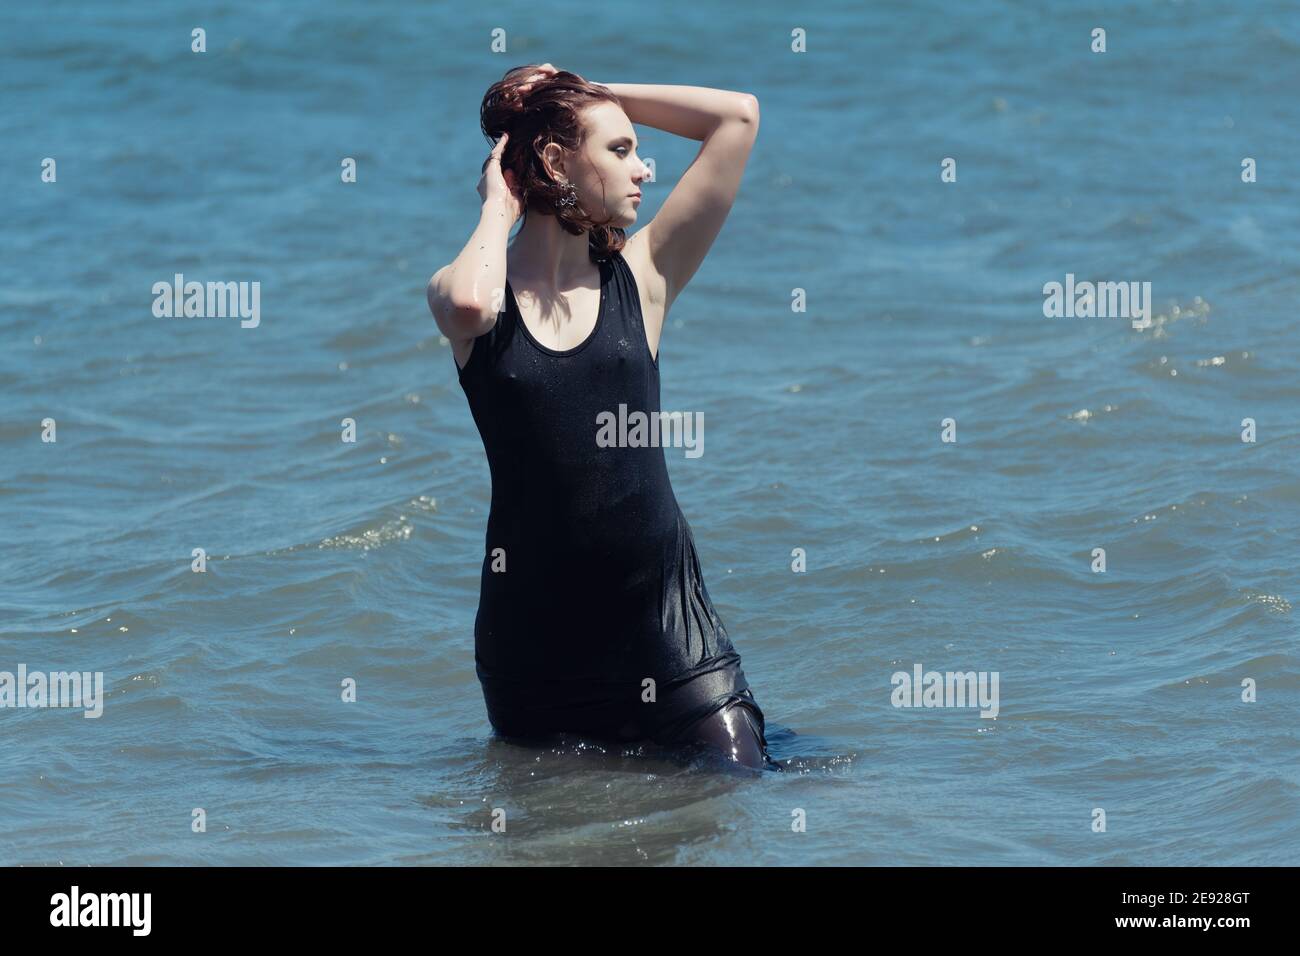 La joven con vestido negro disfruta del mar. Foto de stock